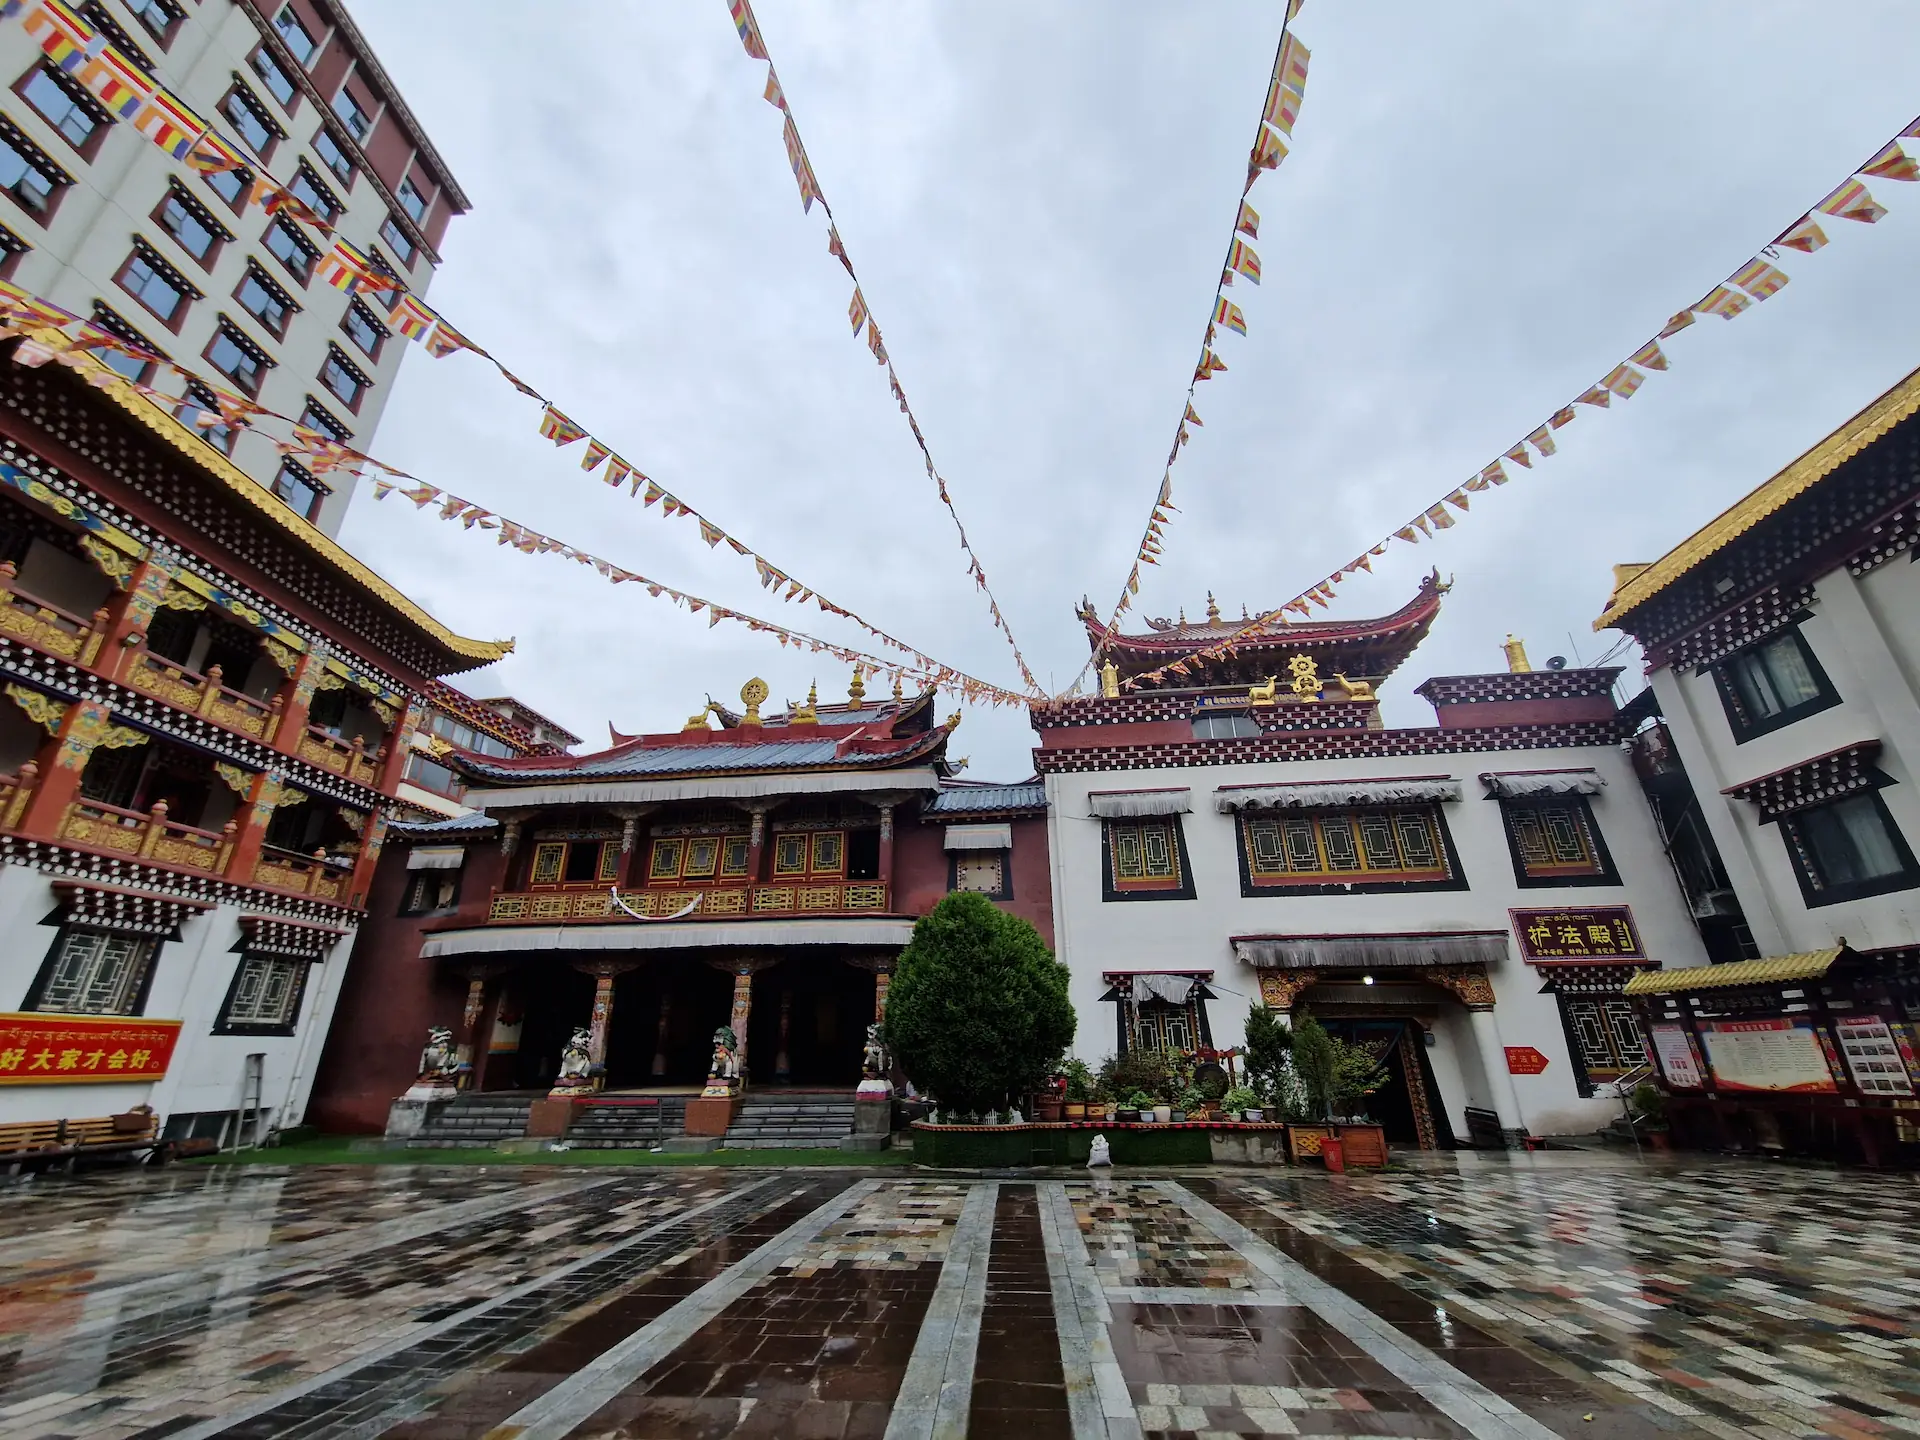 La cour d'un monastère à ciel ouvert, traversée de guirlandes de drapeaux de prières "loungta"